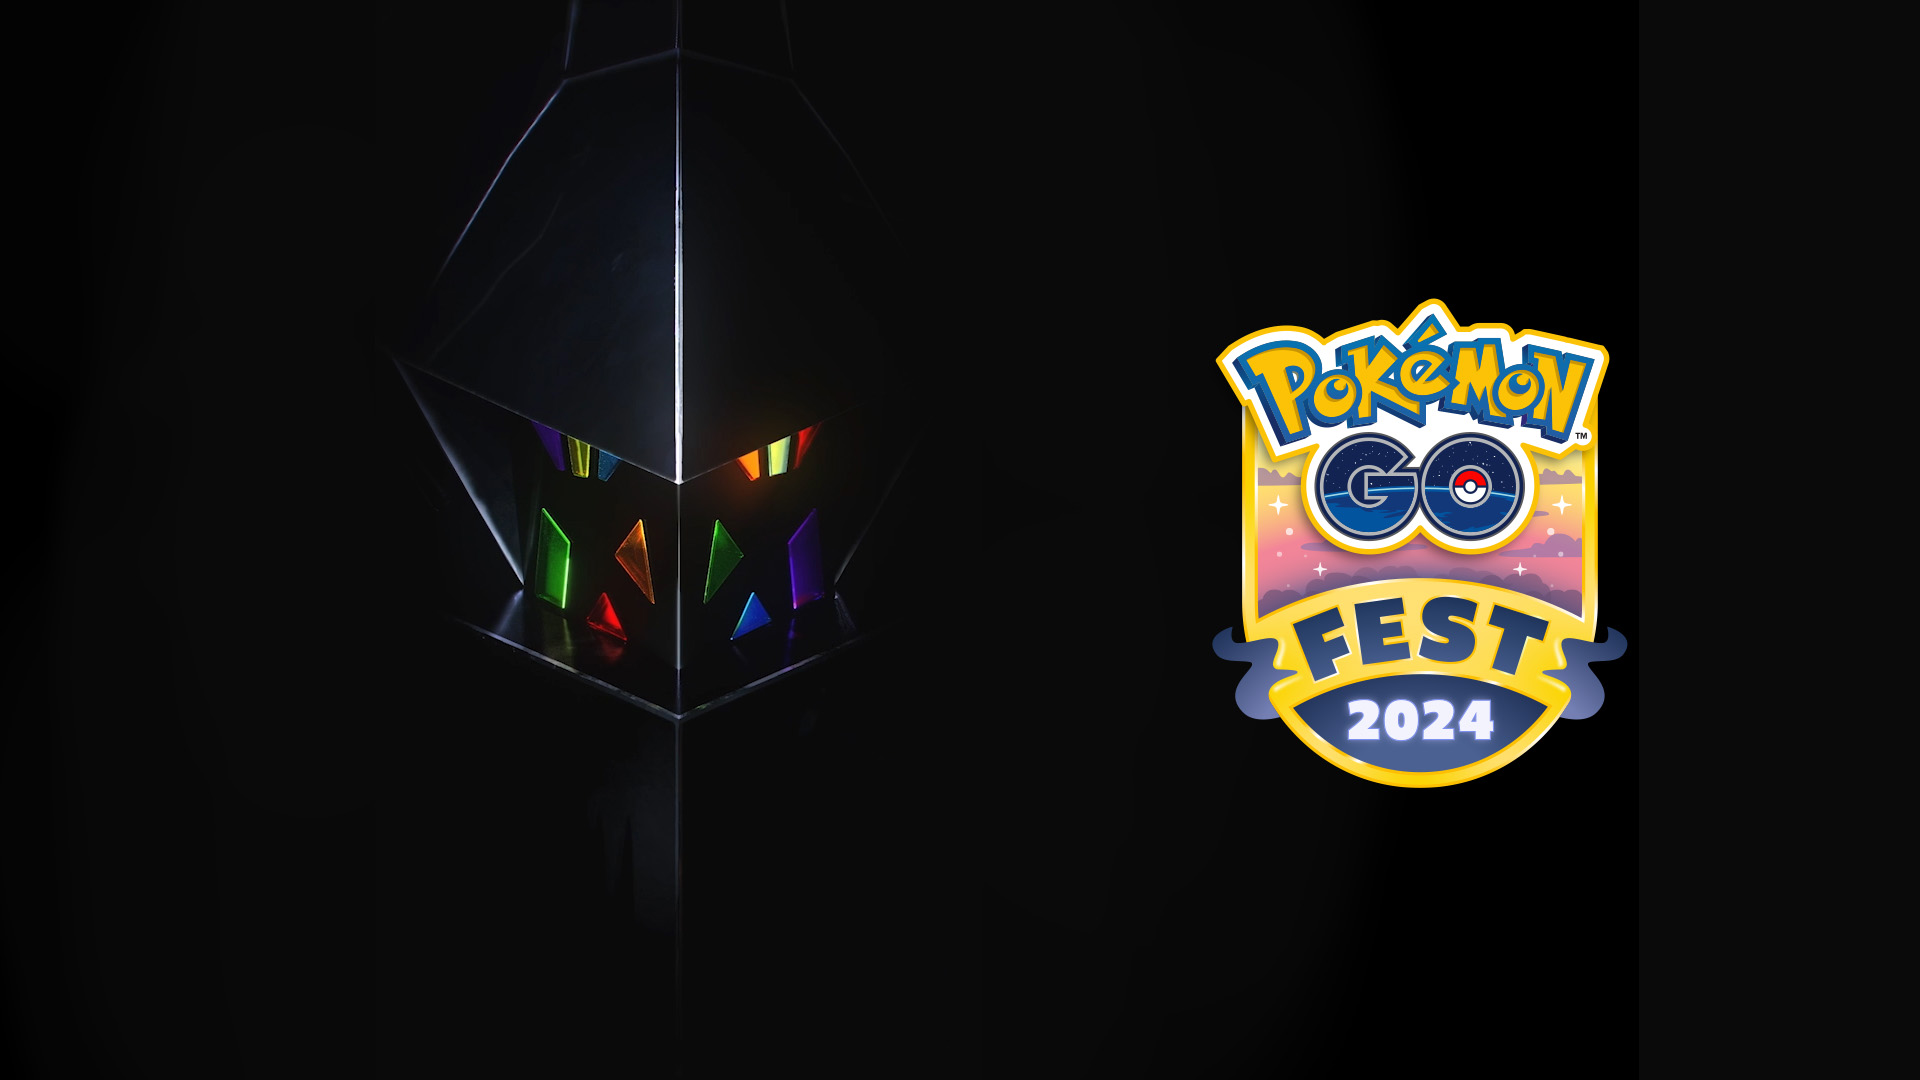 Er is nieuwe muziek gevonden voor Pokémon GO Fest 2024